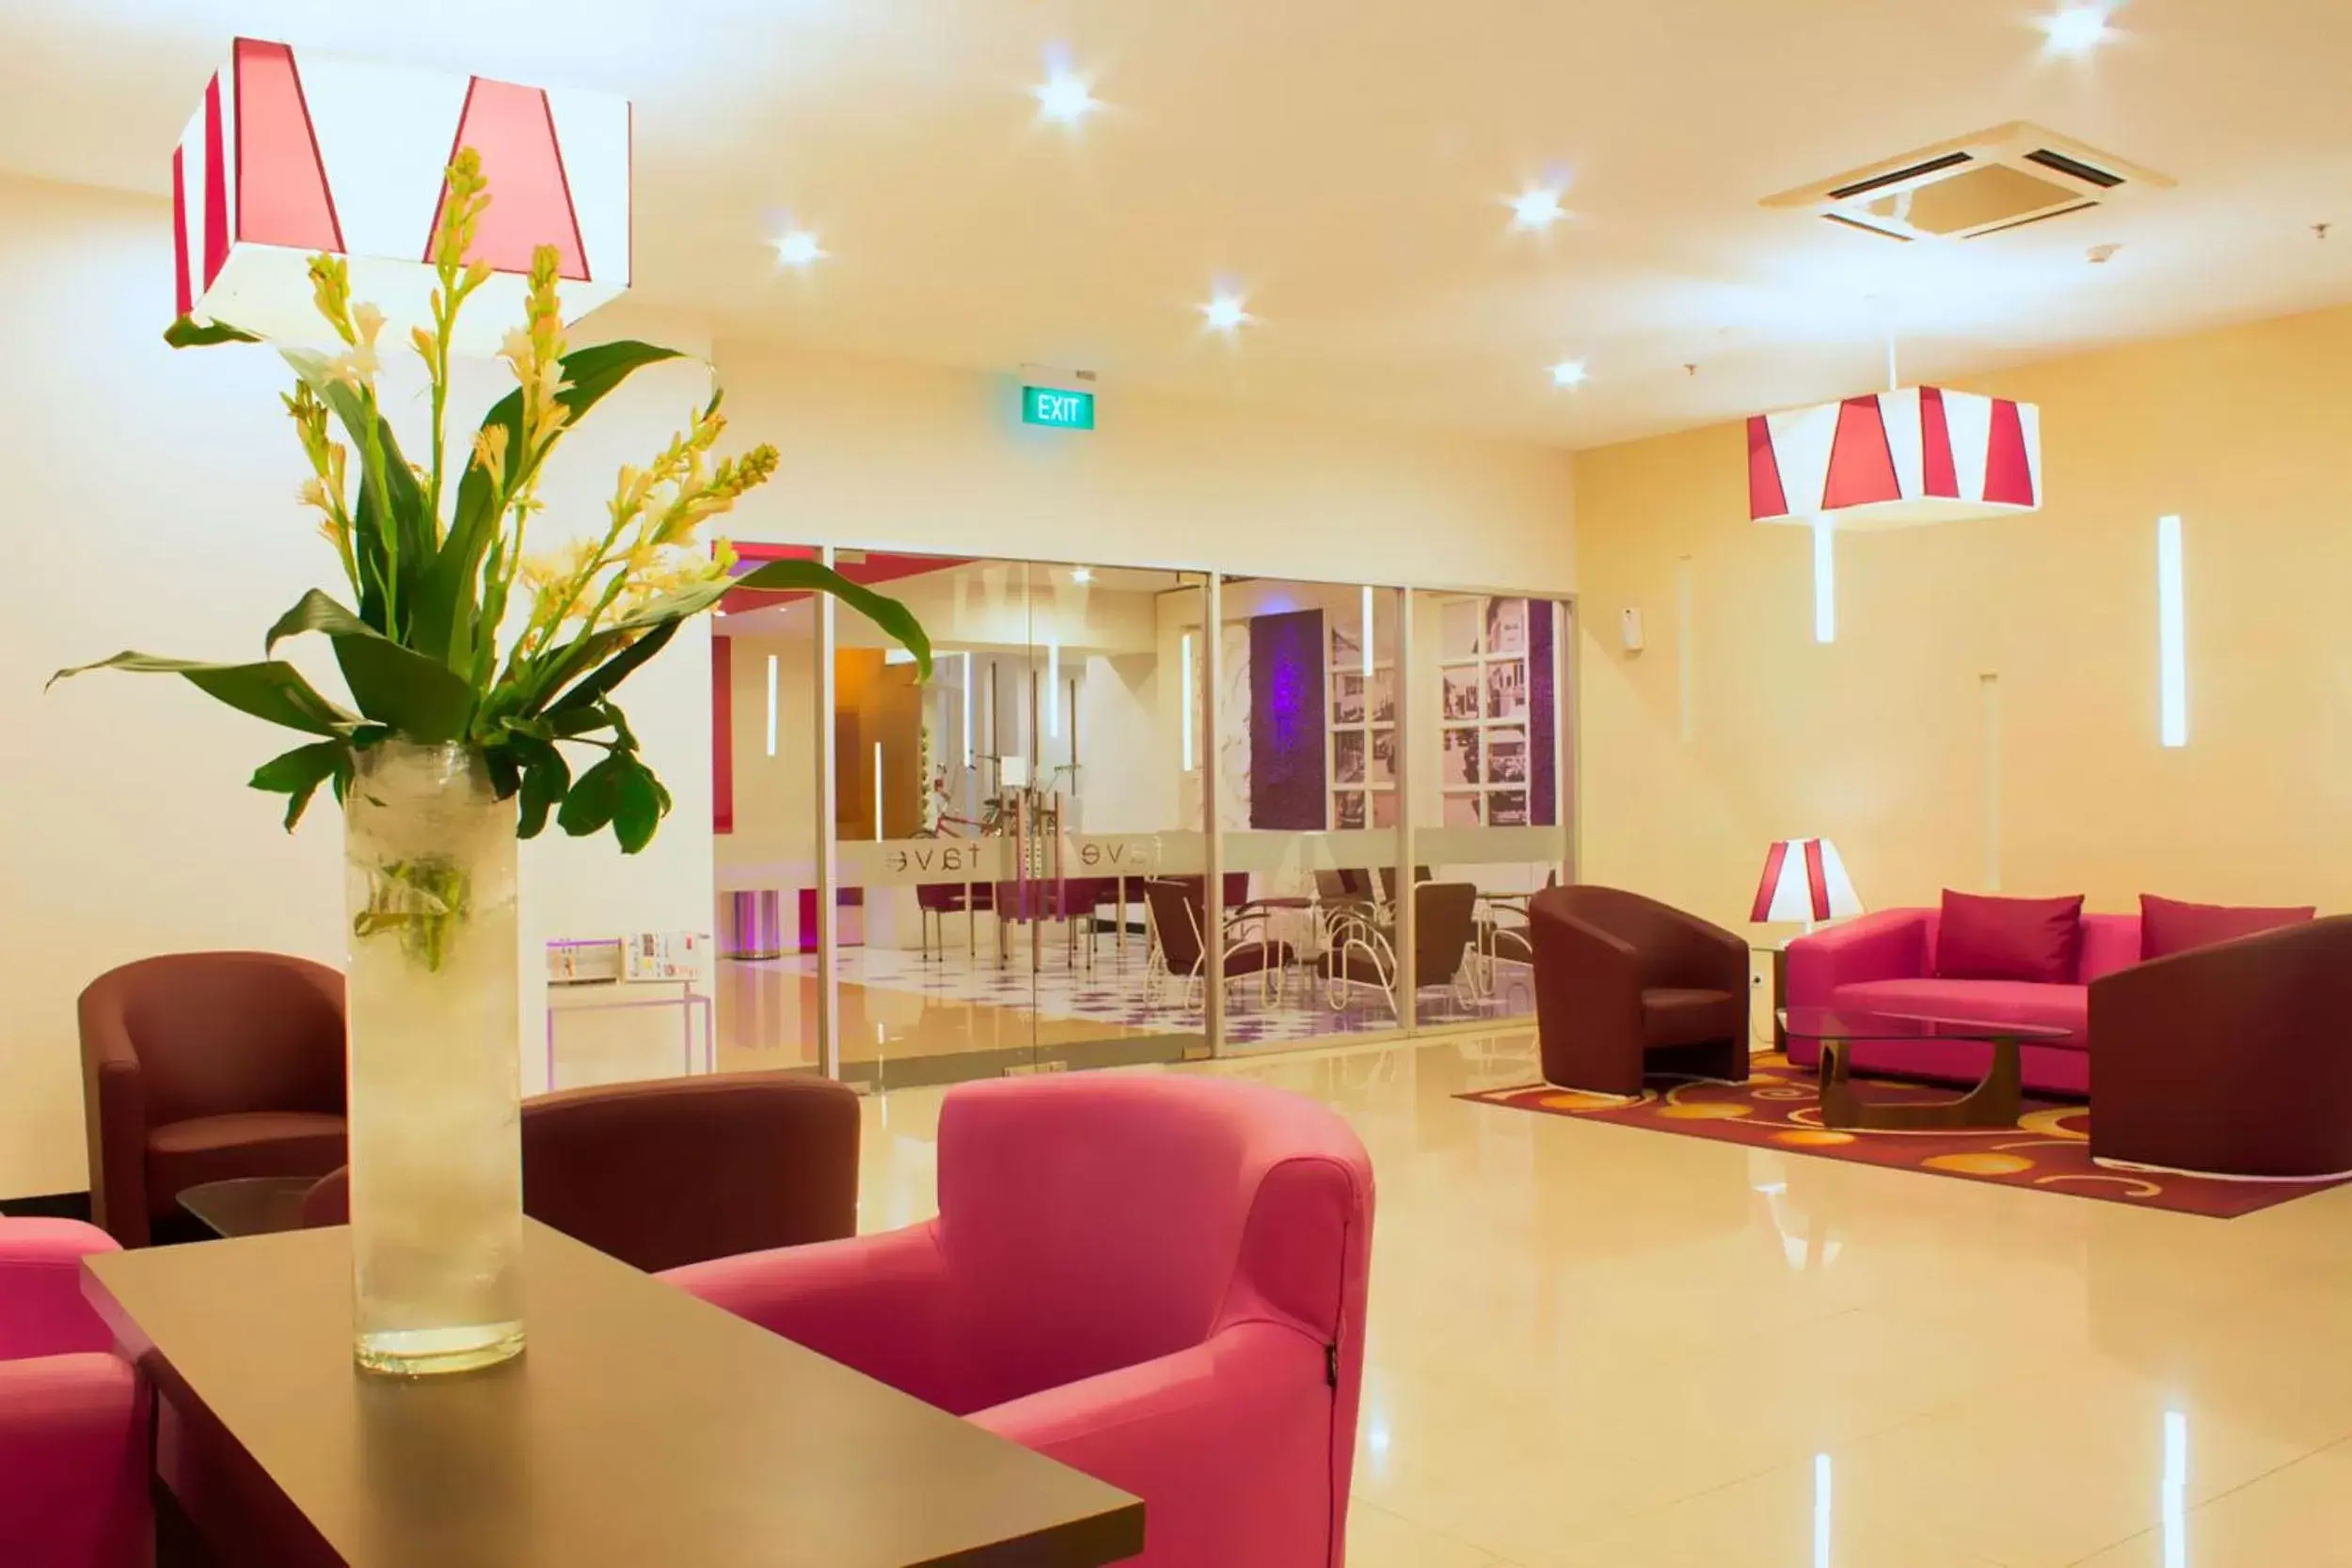 Lobby or reception, Lobby/Reception in favehotel Braga